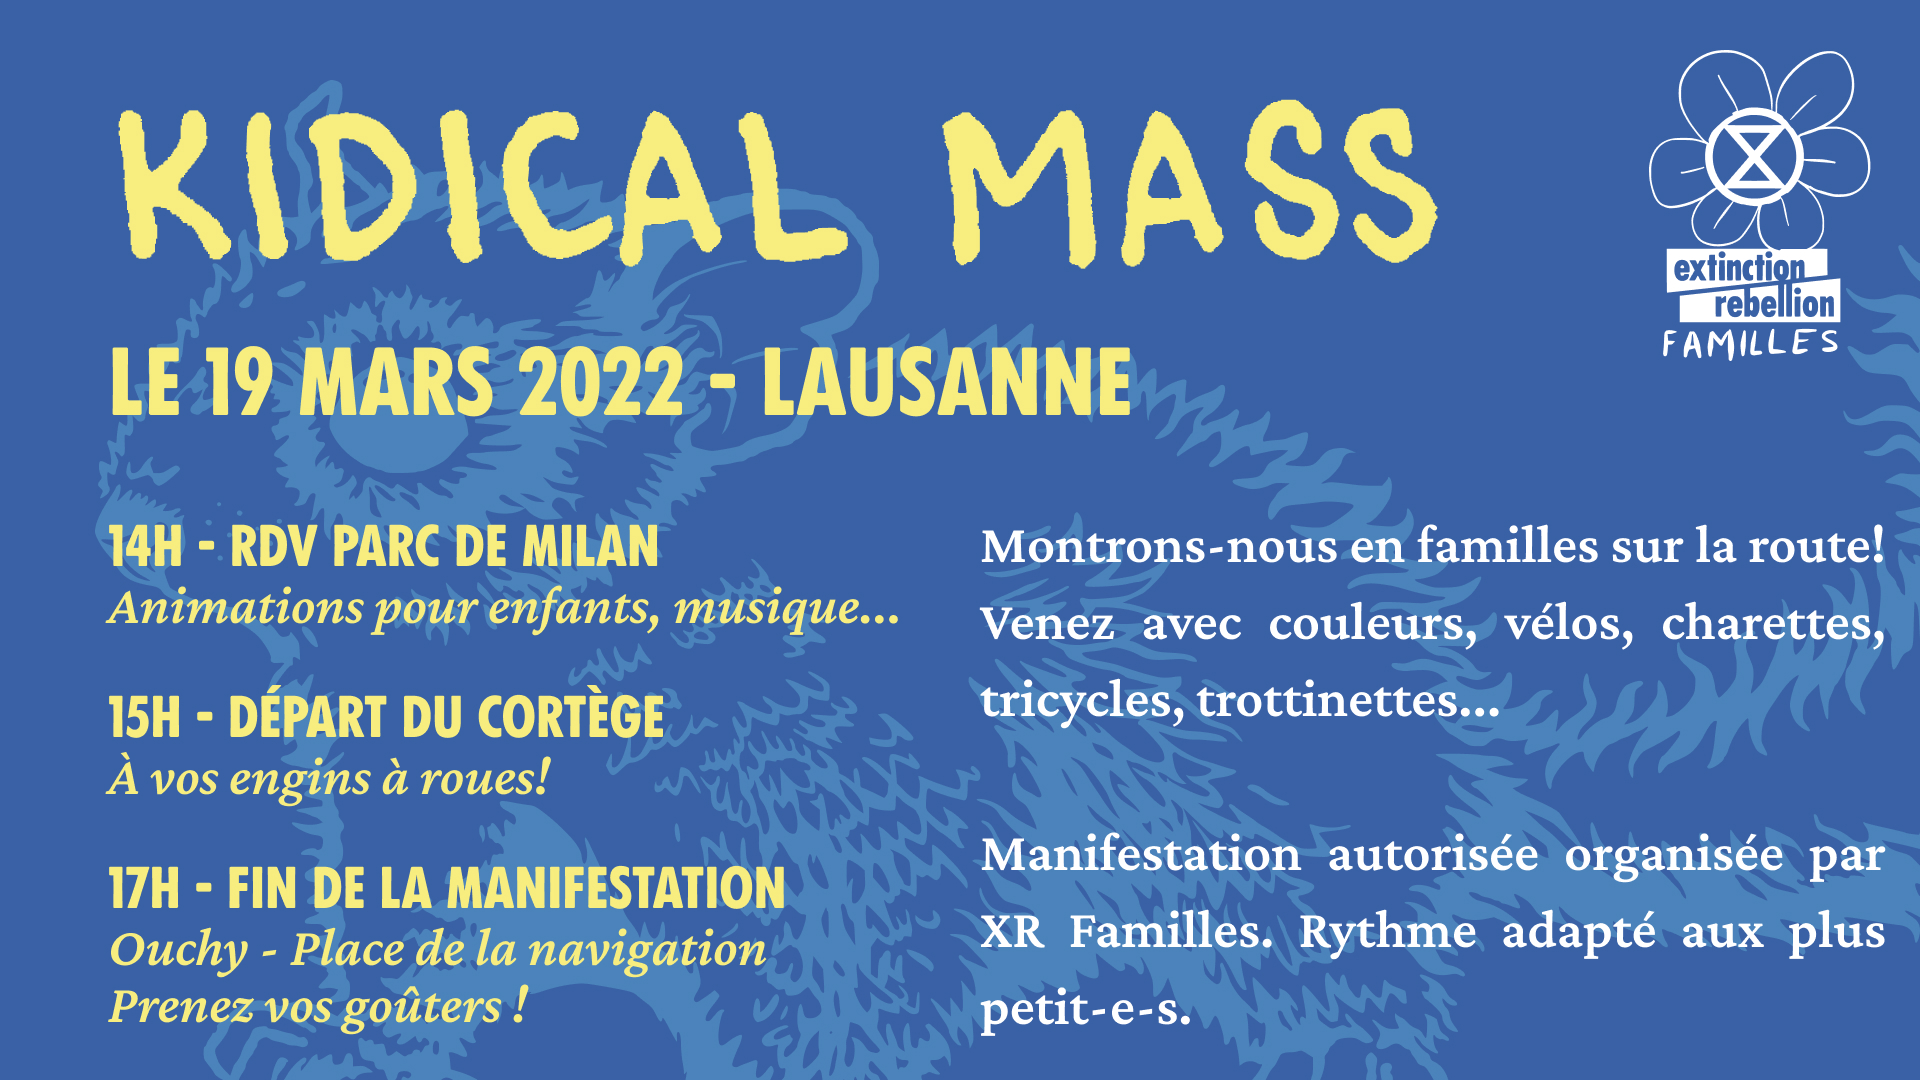 Kidical mass Lausanne !